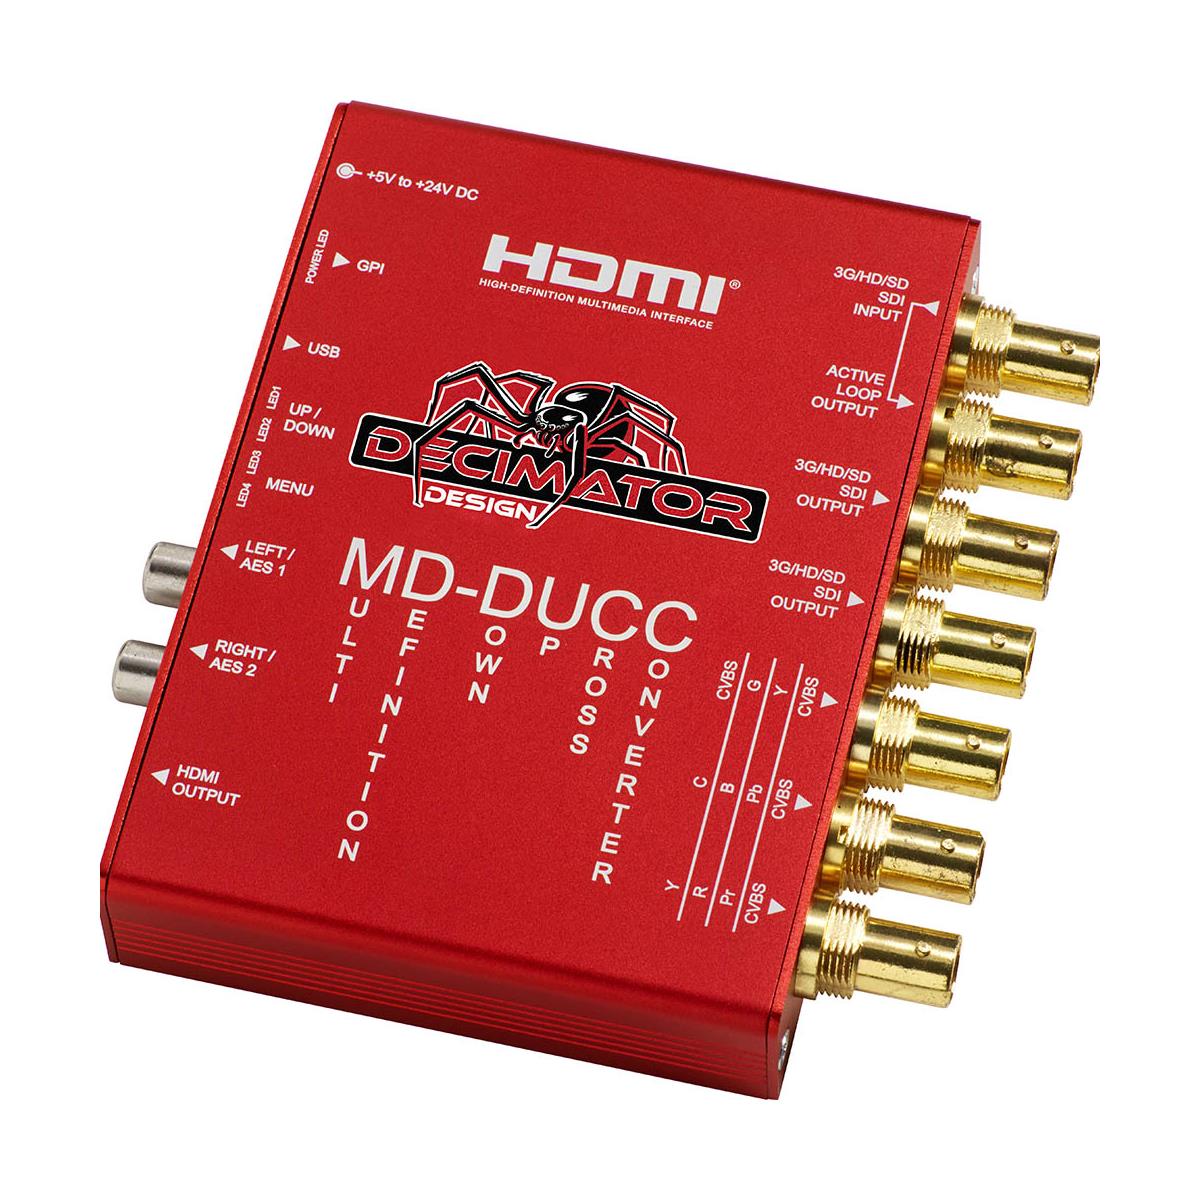 Image of Decimator MD-DUCC Multi-Definiton Down Up Cross Converter SDI to SDI